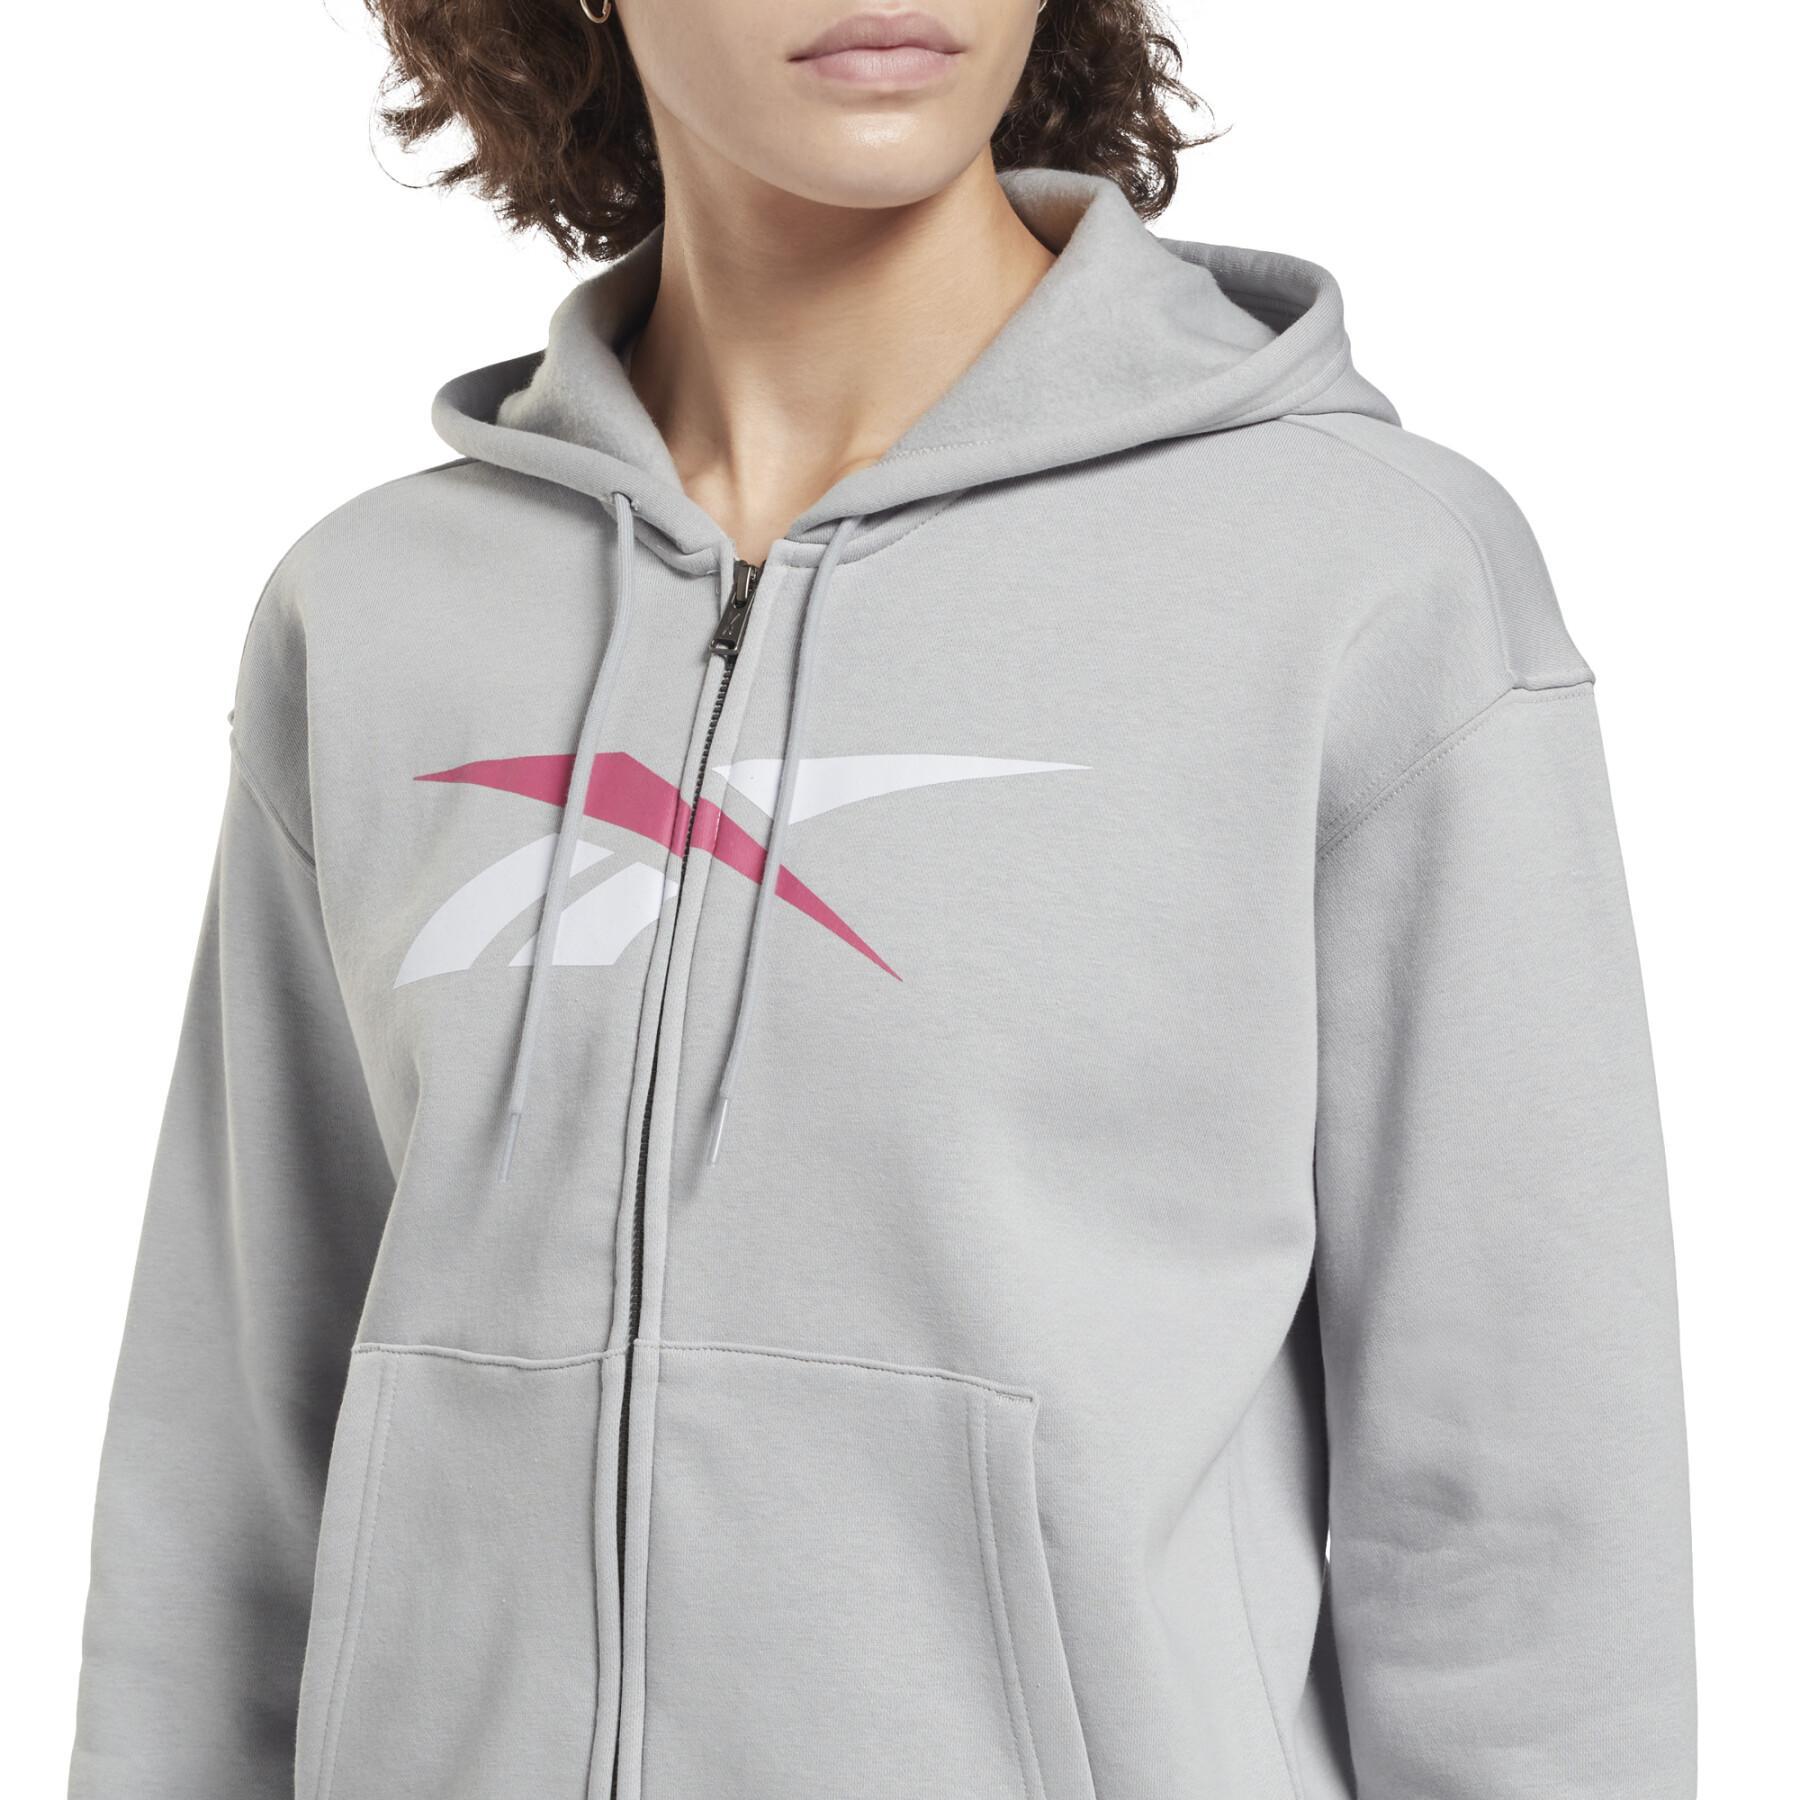 Women's zip-up sweatshirt Reebok Training Essentials Vector